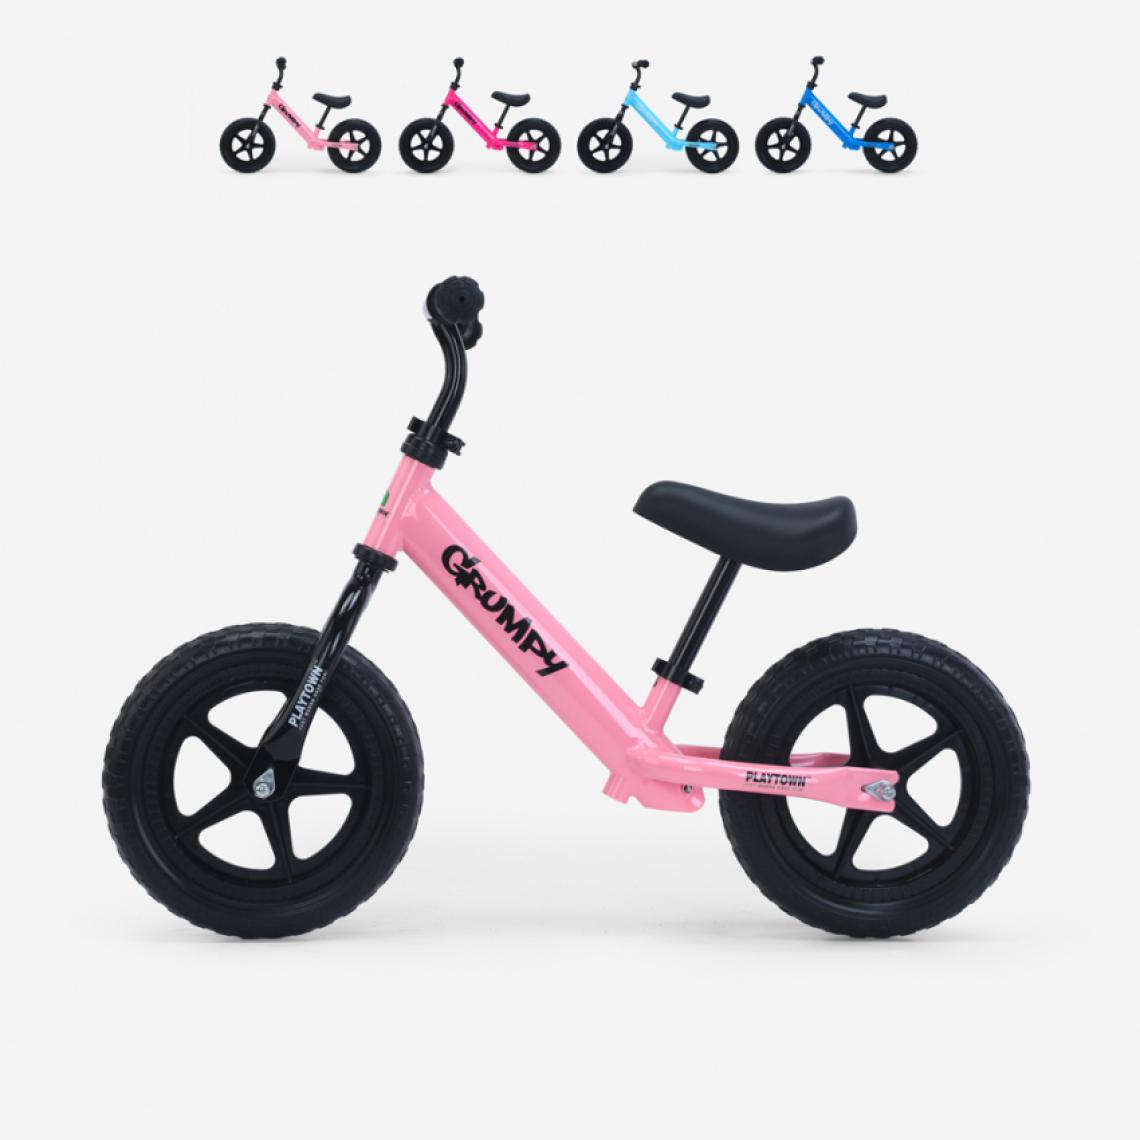 Playtown - Draisienne pour enfants avec pneus en mousse EVA Grumpy, Couleur: Rose - Tricycle